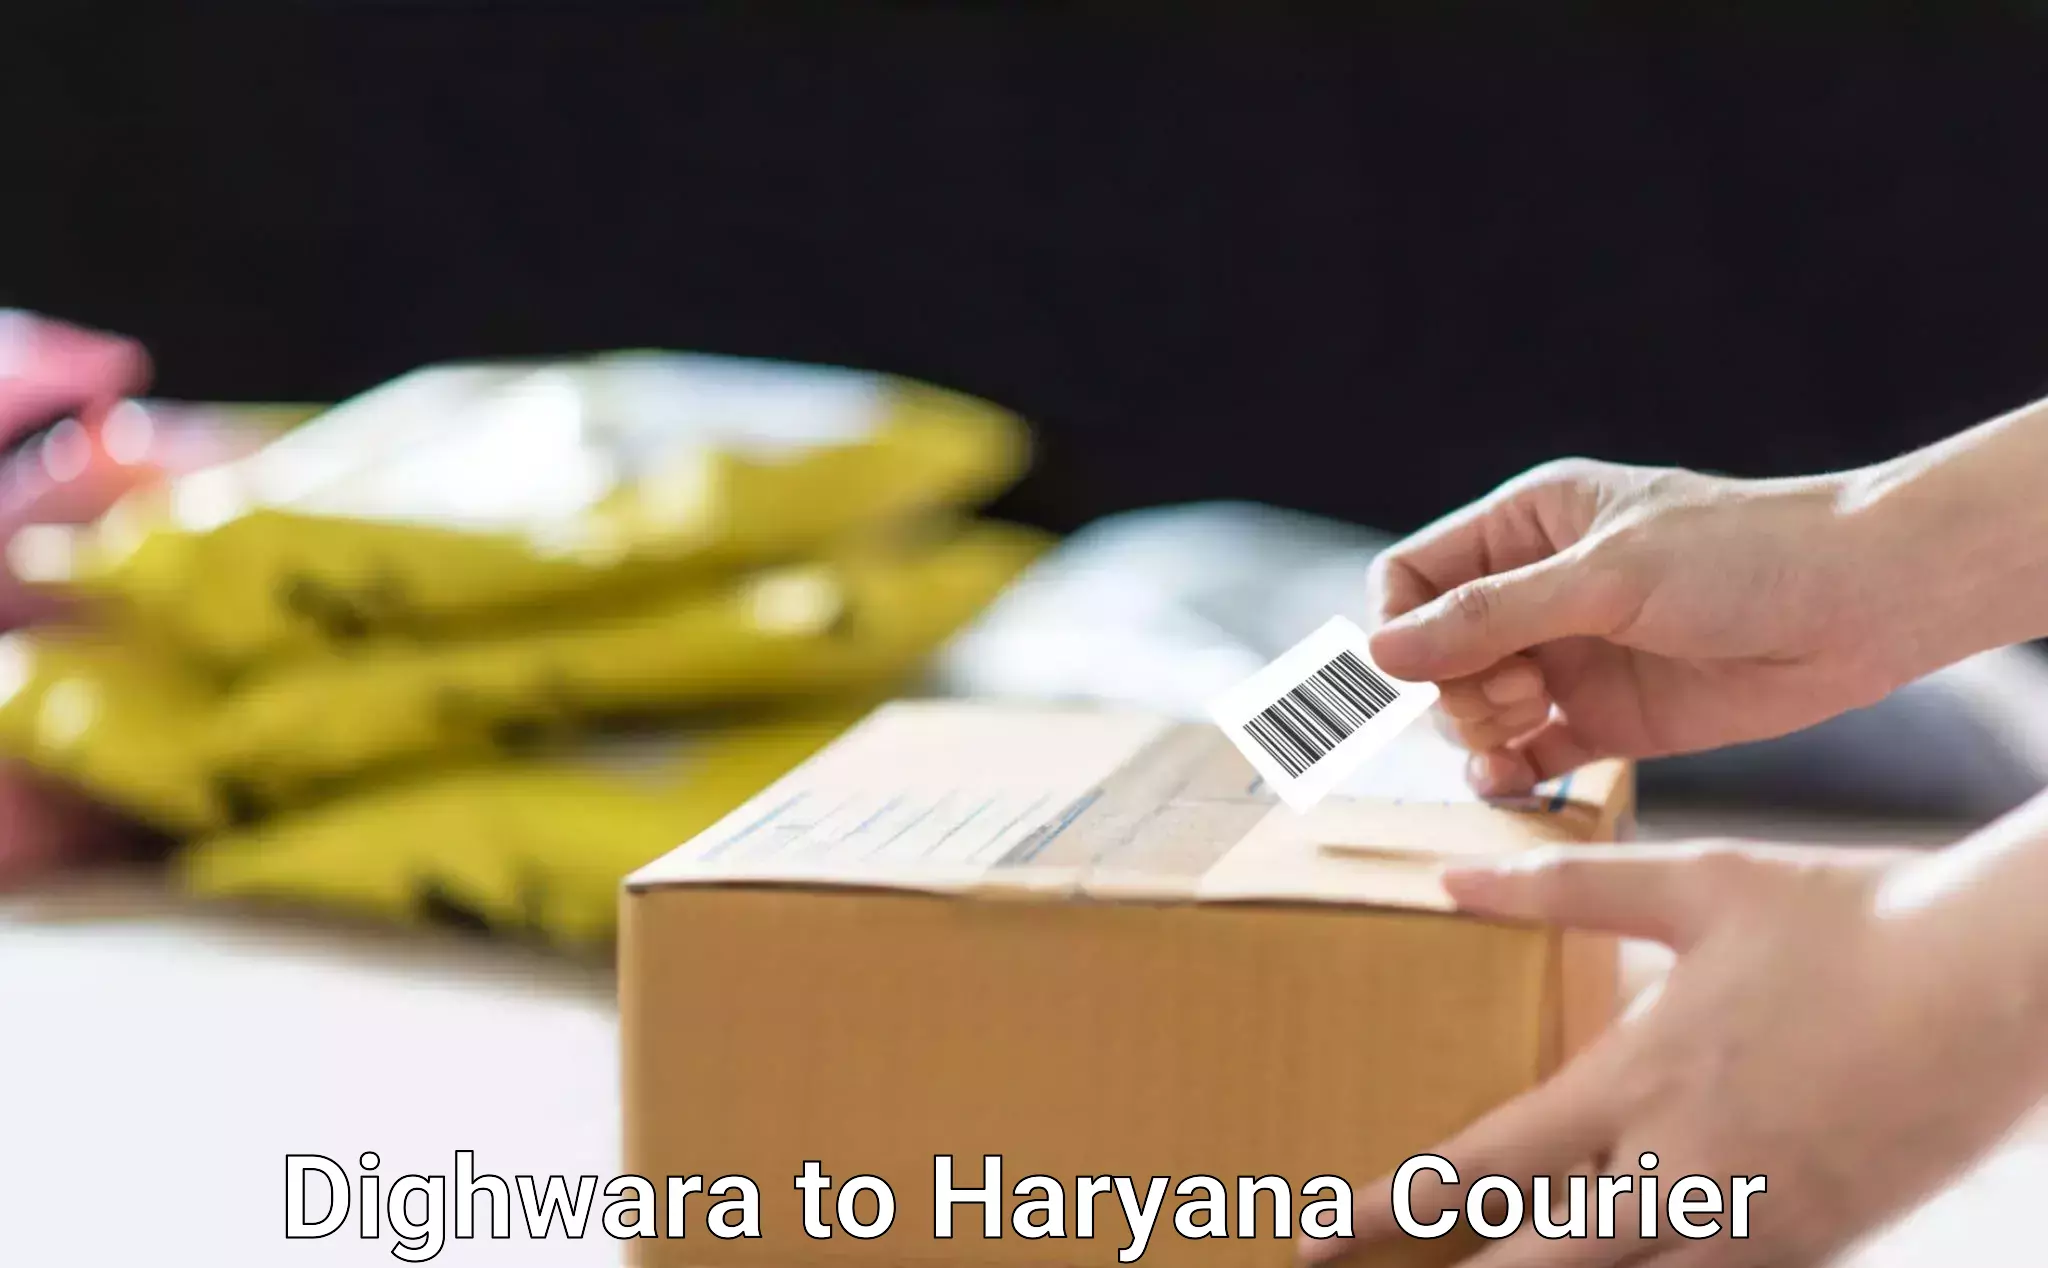 Skilled furniture movers Dighwara to Sirsa